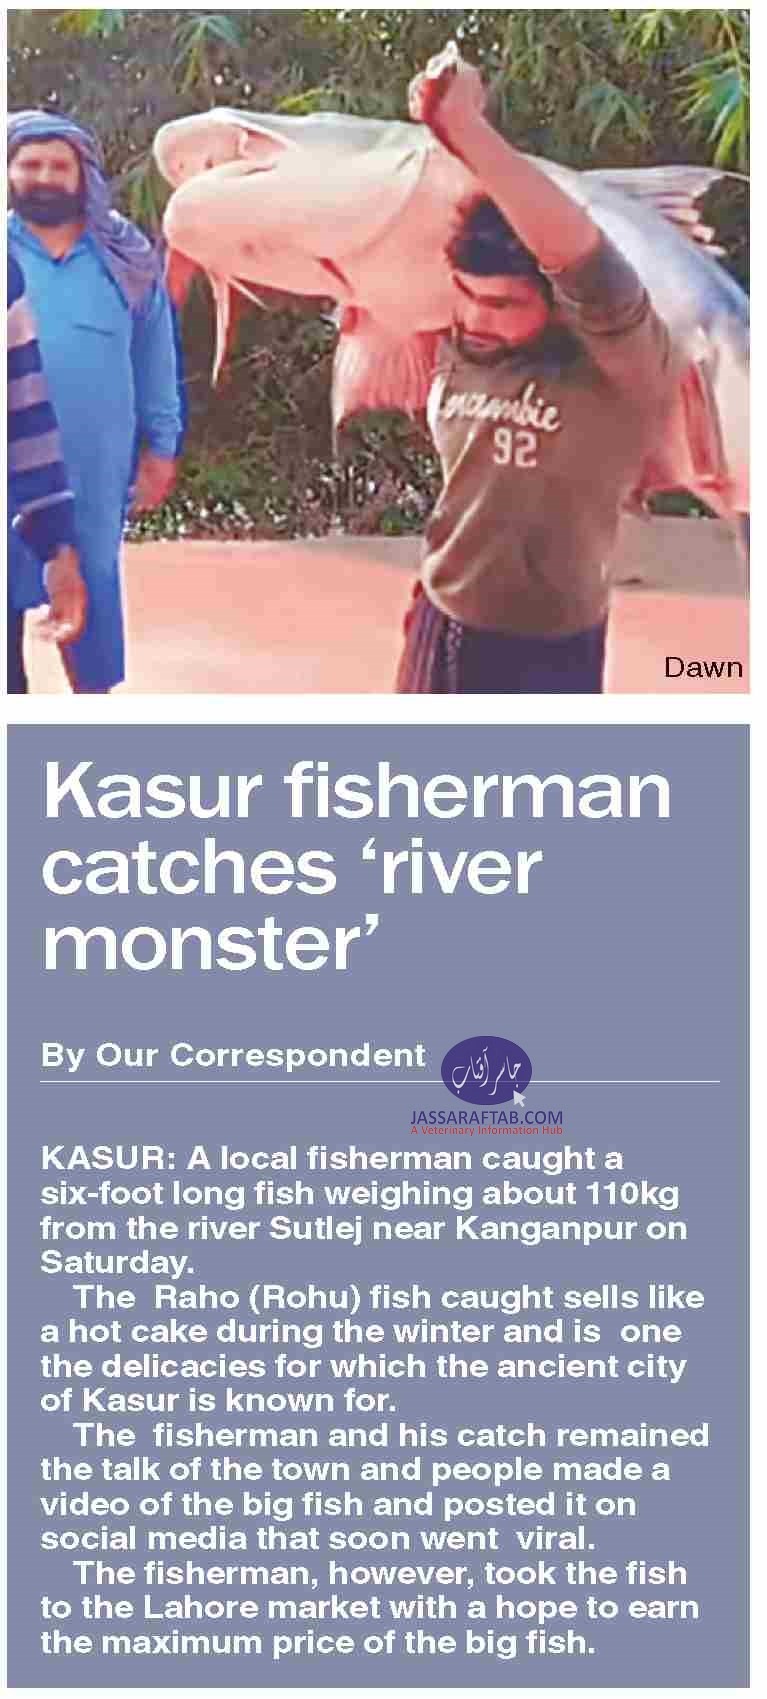 Kasur fisherman caught Raho fish from river Sutlej near Kanganpur